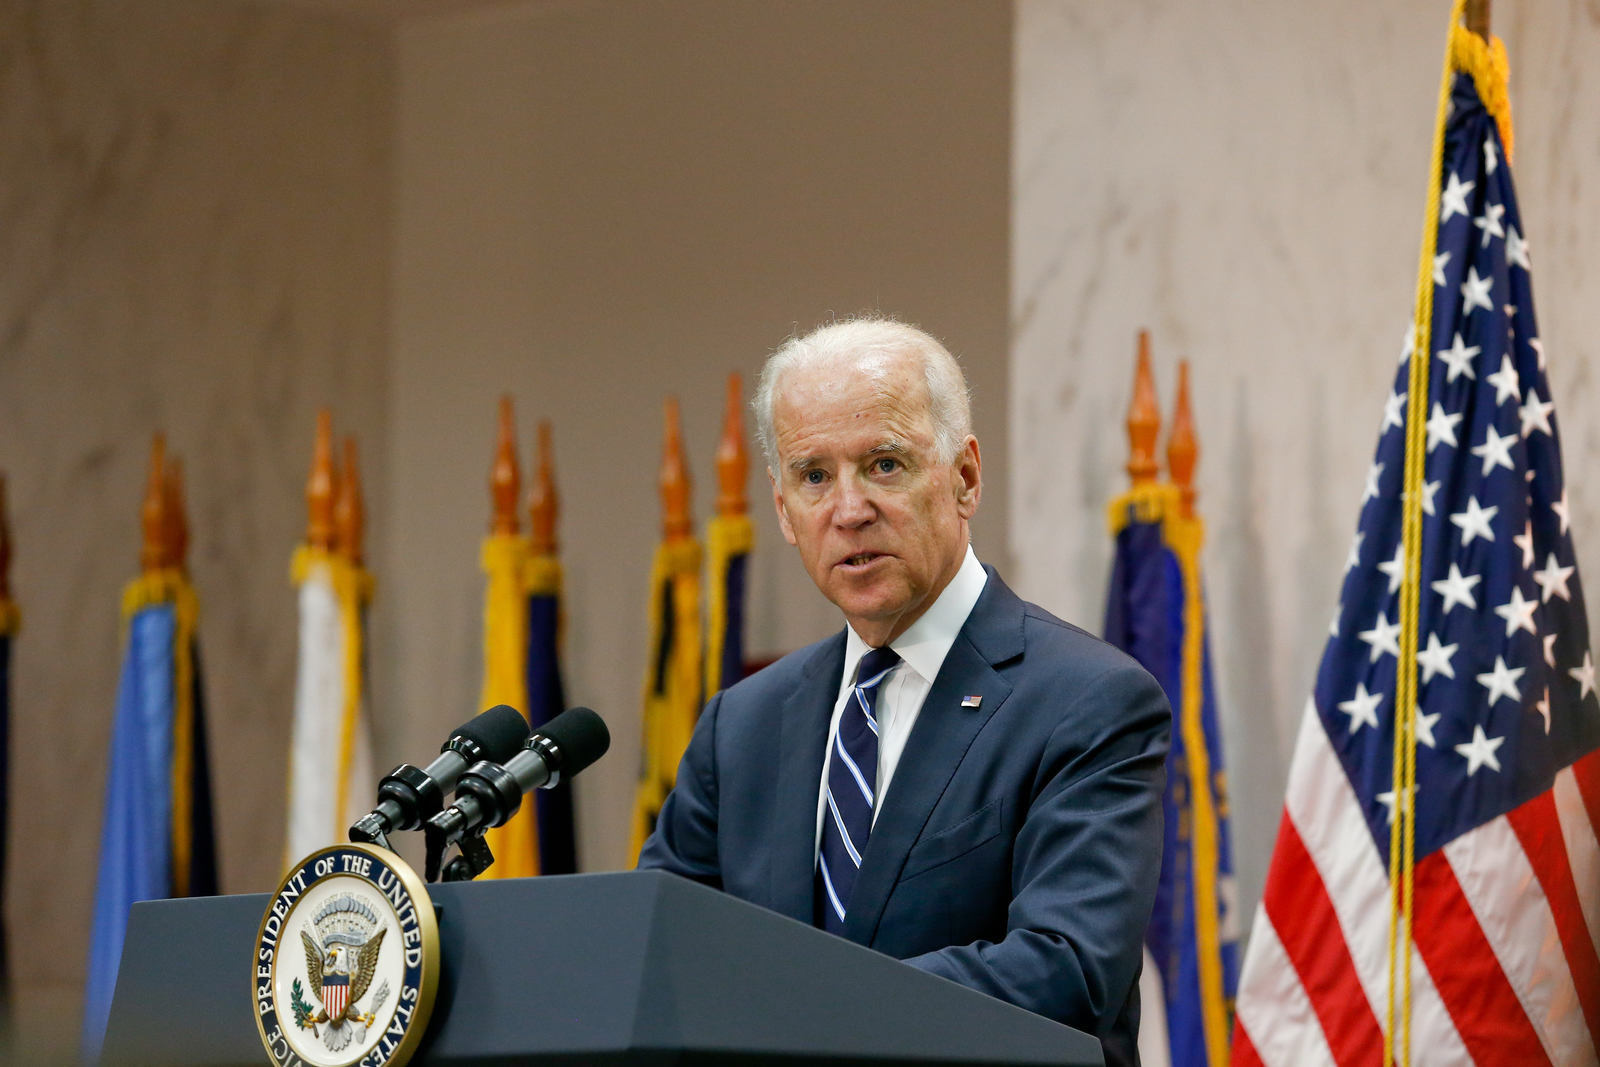 *ARQUIVO* BRASÍLIA, DF, 17.06.2014 - O então vice-presidente americano Joe Biden durante declaração à imprensa na Embaixada Americana em Brasília. (Foto: Pedro Ladeira/Folhapress)